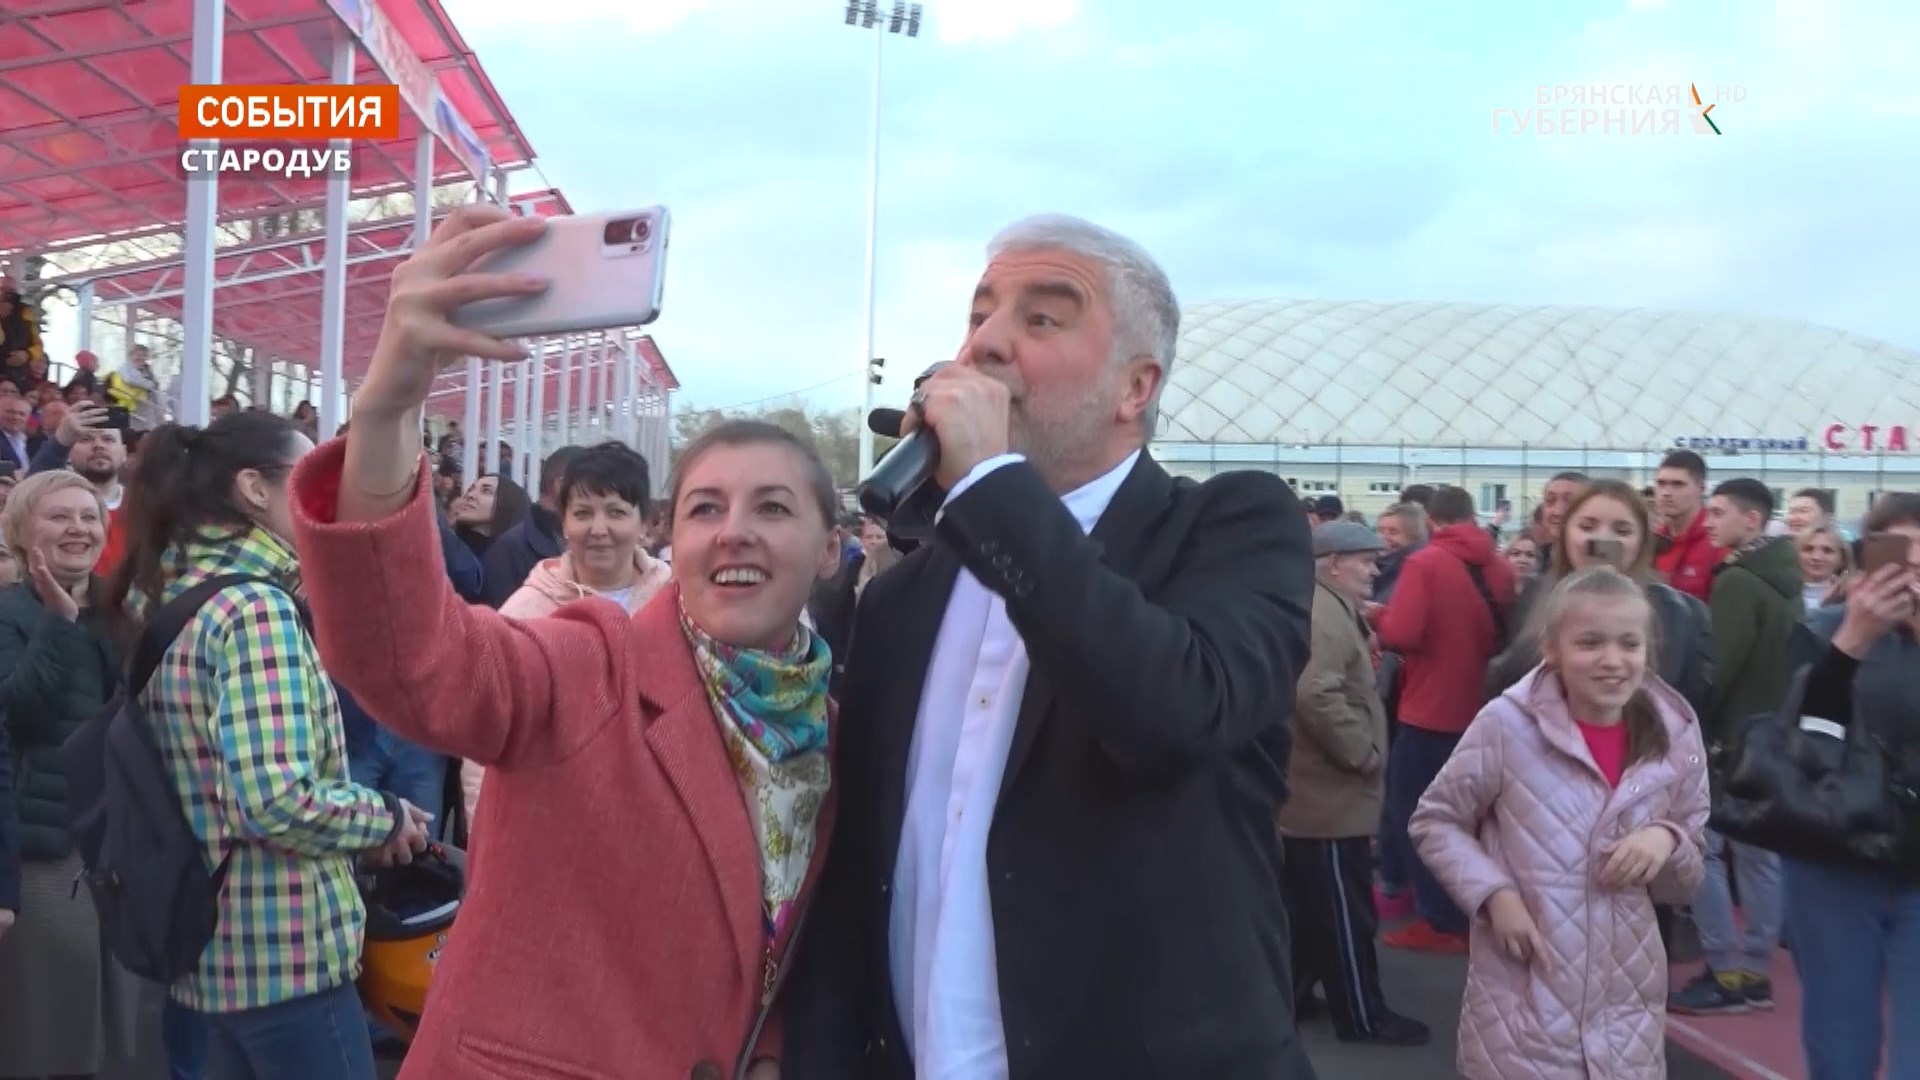 Популярный эстрадный певец Сосо Павлиашвили поддержал жителей приграничных брянских районов концертом